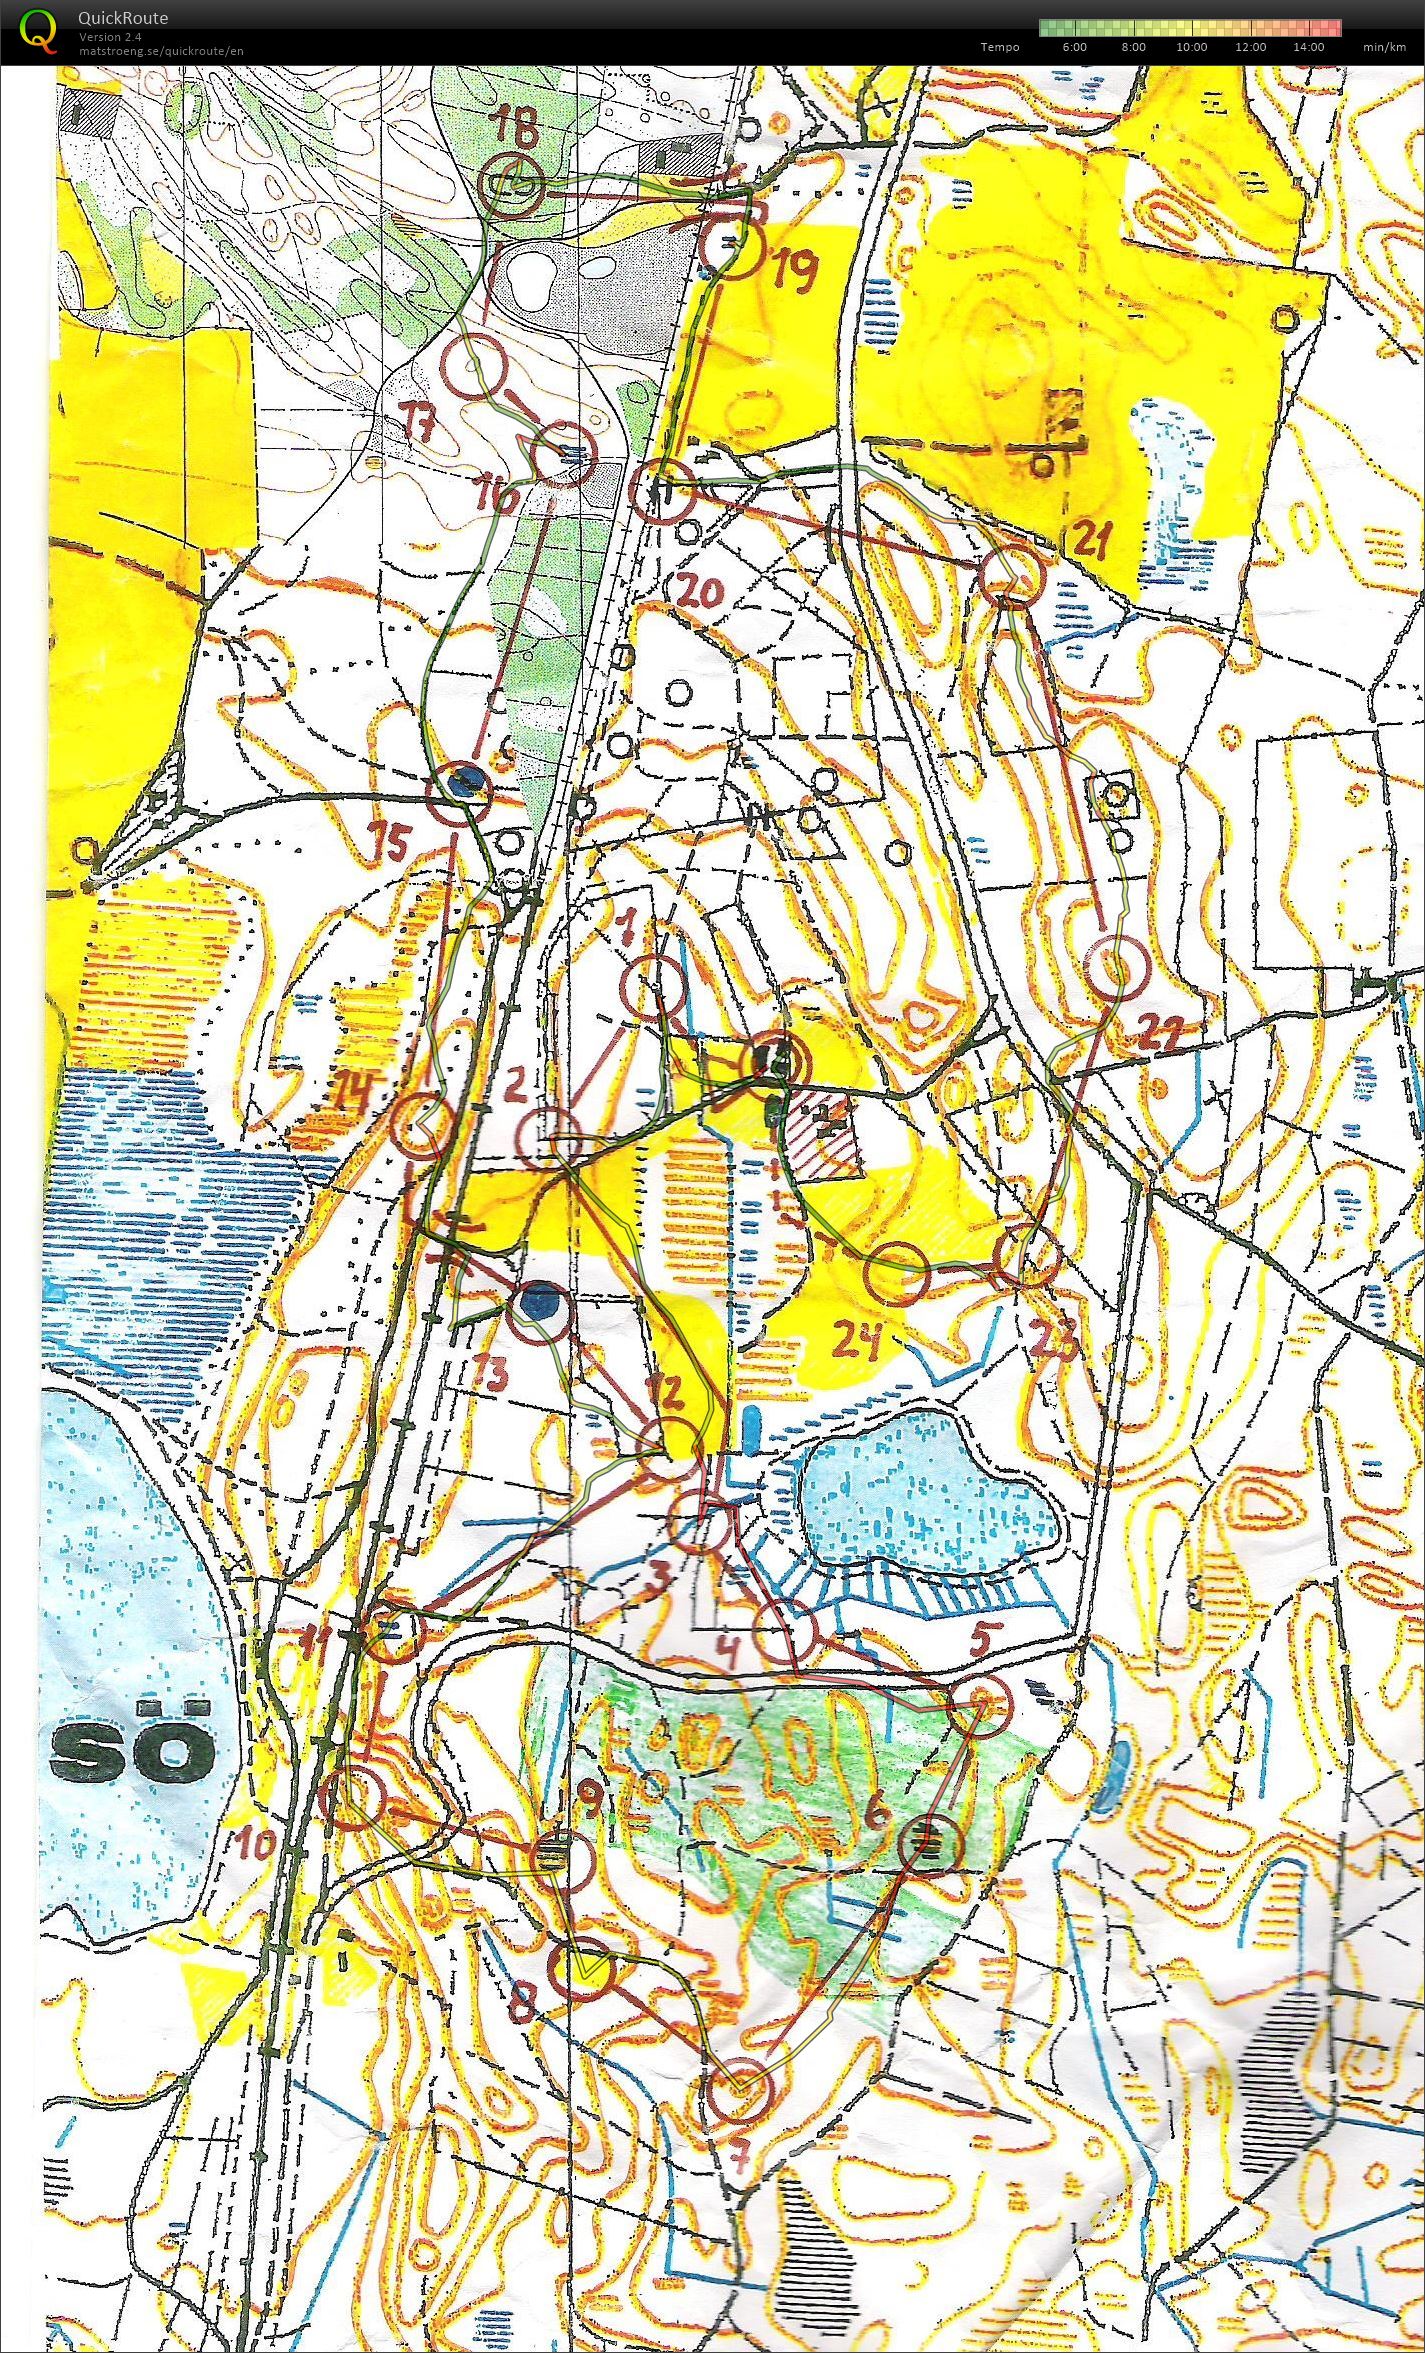 Rold Brændeskov - bane 1 - 6,9 km. (01/01/2014)